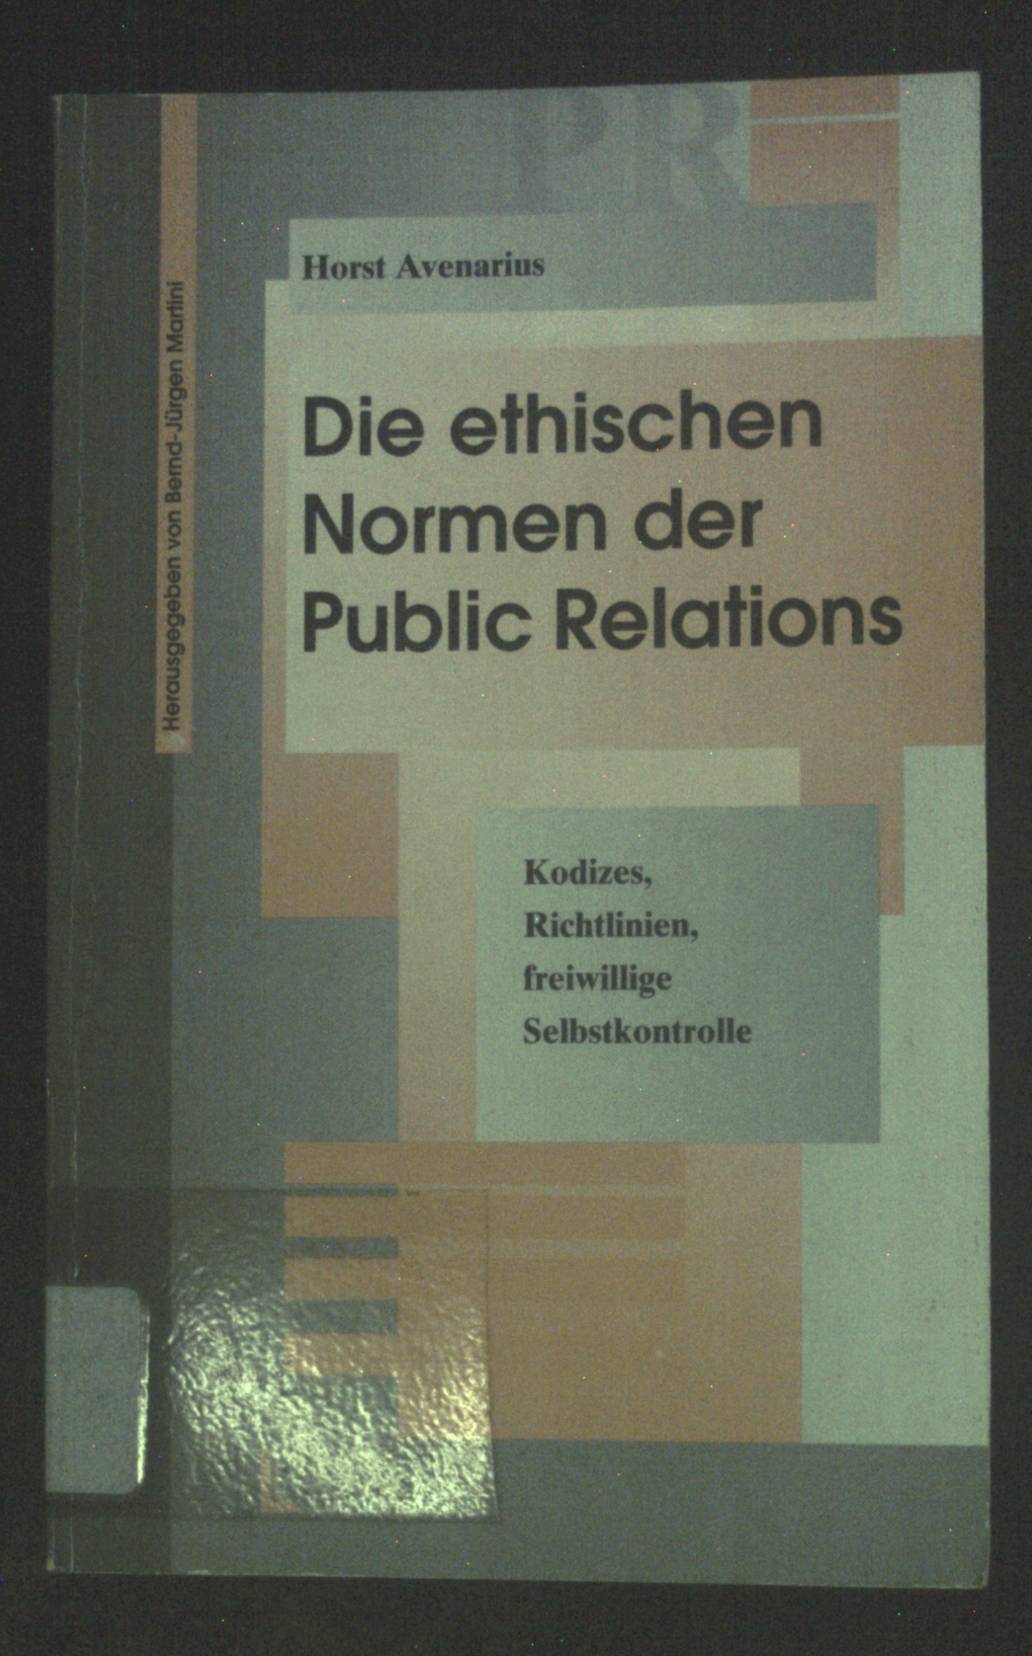 Die ethischen Normen der Public Relations : Kodizes, Richtlinien, freiwillige Selbstkontrolle. - Avenarius, Horst und Bernd-Jürgen Martini